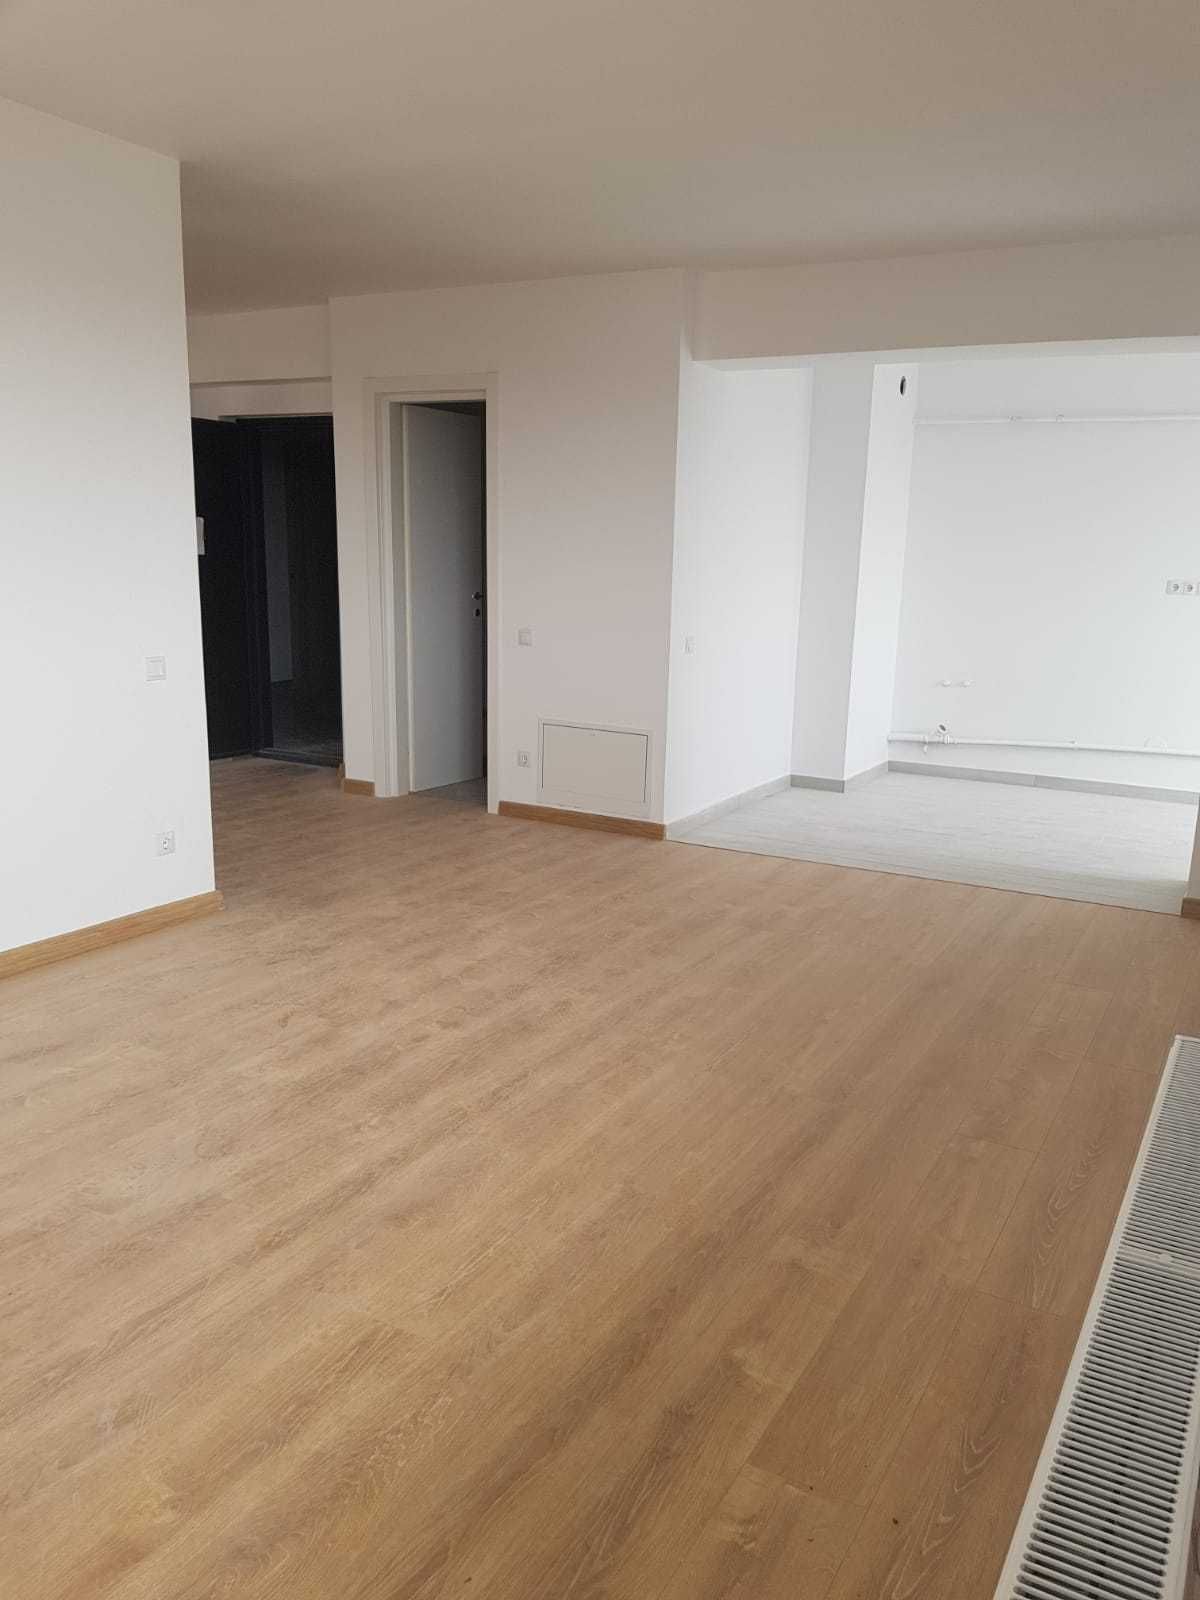 Apartament cu 3 camere in bloc nou Ploiesti. Promo 800 euro mp + tva.